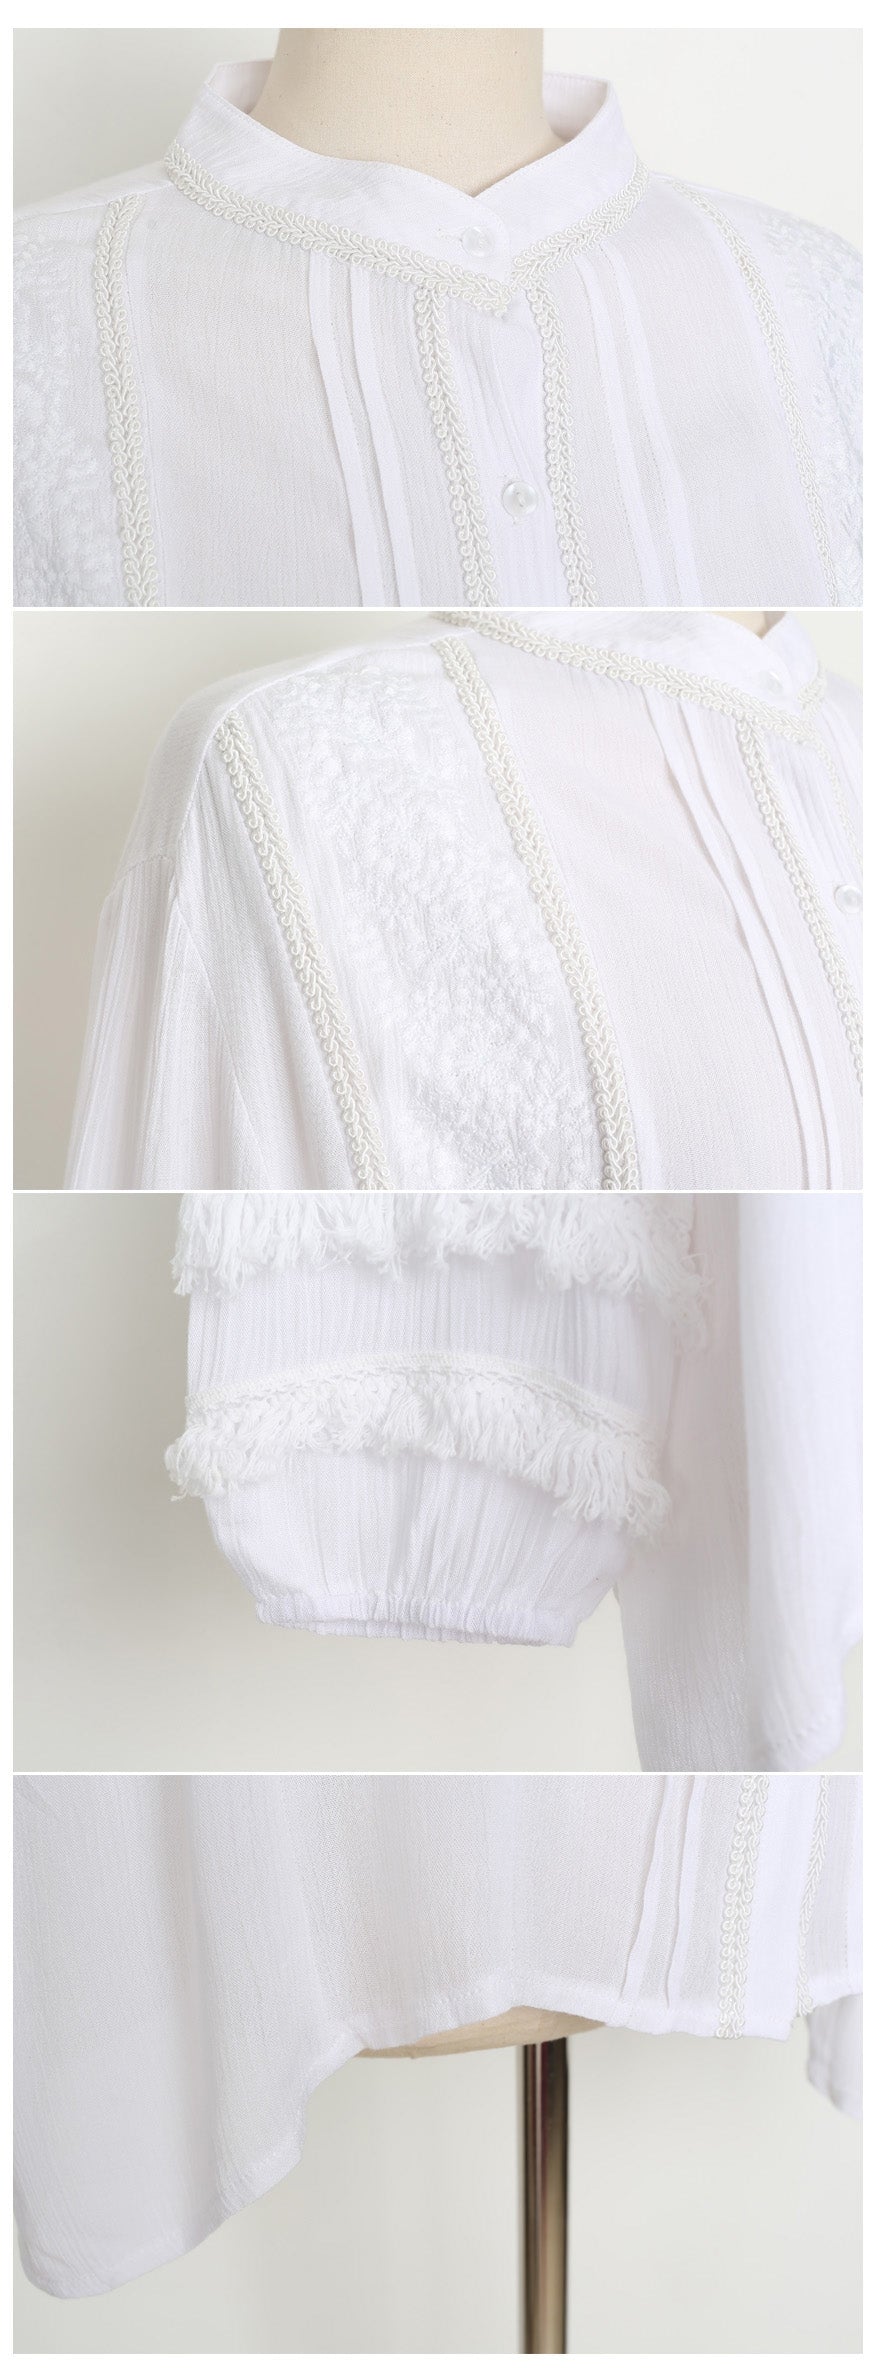 White Elegant Fringed Blouses Woven Sheer Tops